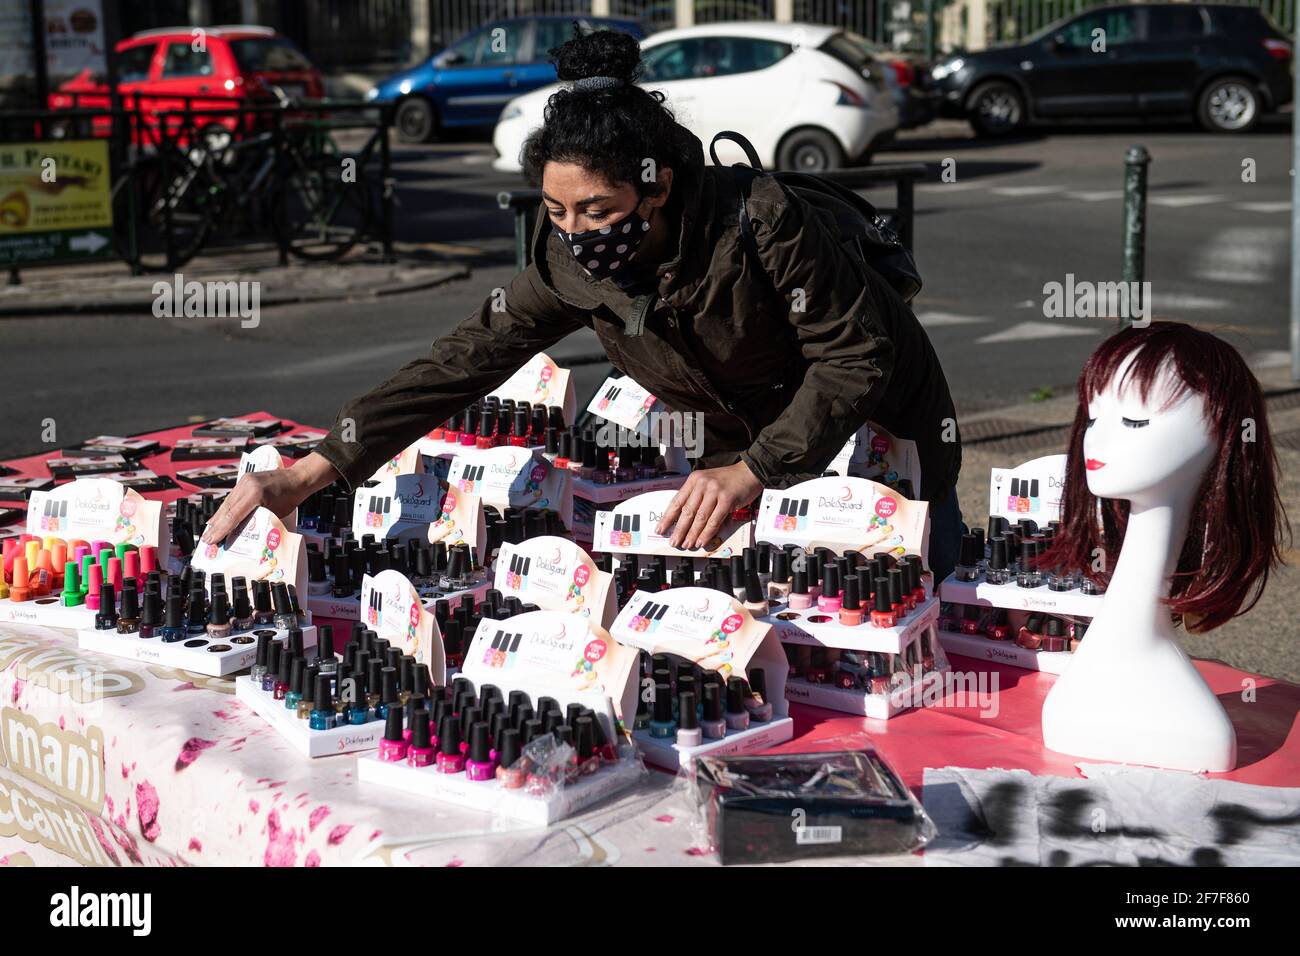 Turin, Italien - 07. April 2021: Ein Straßenhändler richtet einen Stand ein, während einer Protestaktion von Straßenverkäufern von Non-Food-Sektoren gegen die Schließungen aufgrund von Regierungsbeschränkungen gegen den COVID-19. Trotz des Verbots haben die Händler ihre Stände aufgestellt. Kredit: Nicolò Campo/Alamy Live Nachrichten Stockfoto